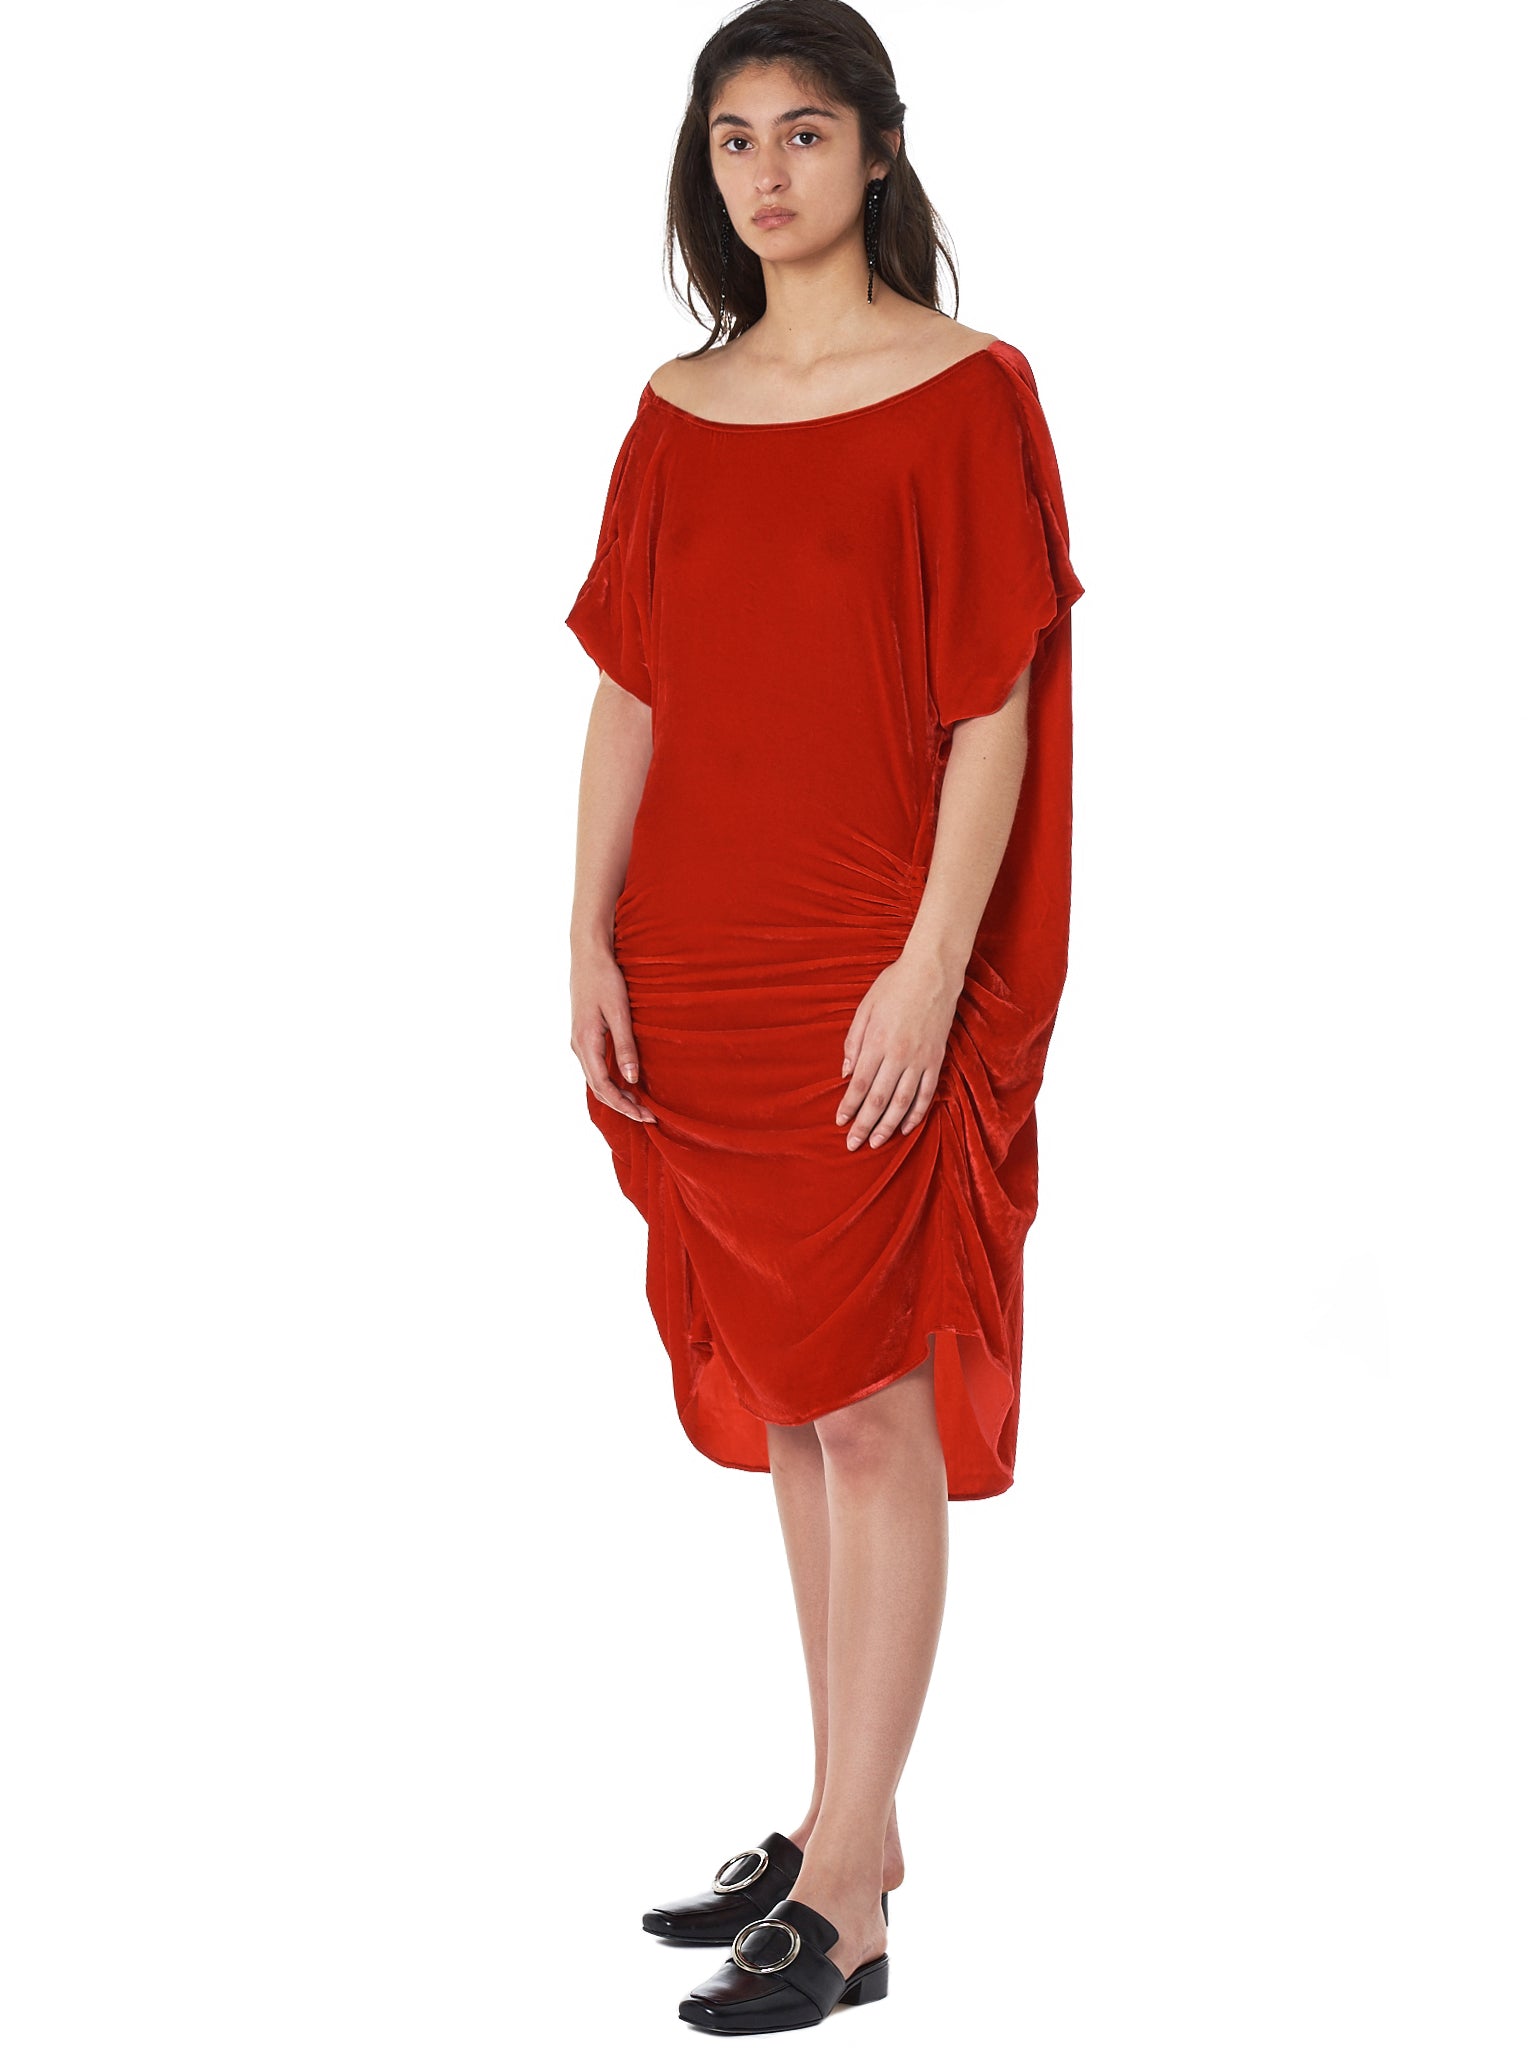 Paula Knorr Short Dress - Hlorenzo Style